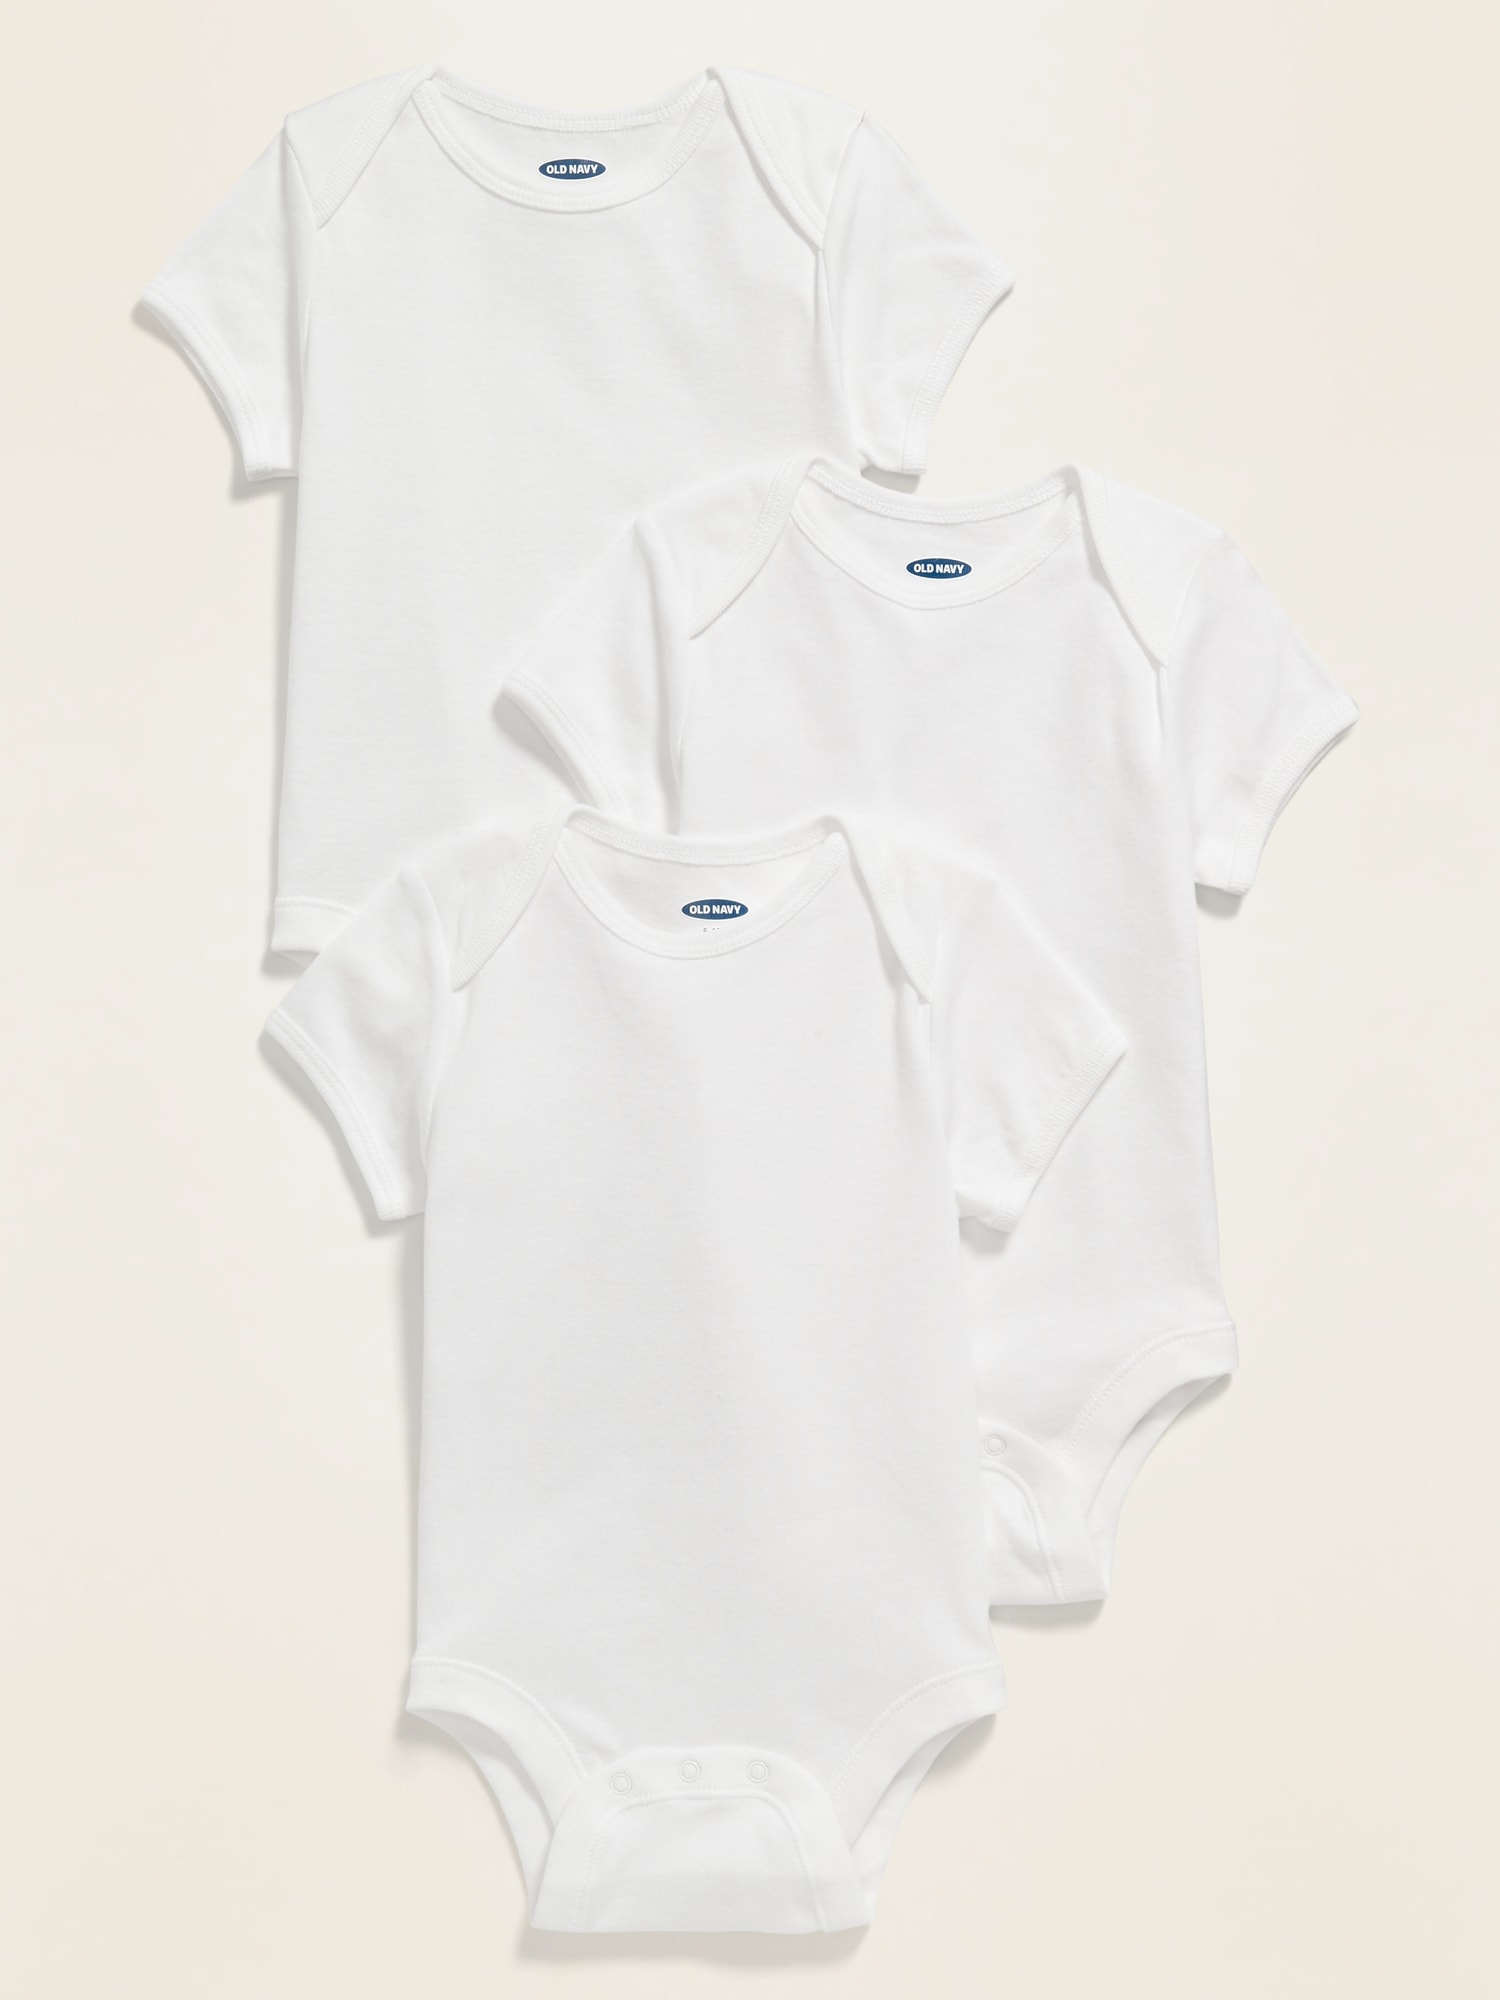 Unisex Short-Sleeve Jersey Bodysuit 3-Pack for Baby